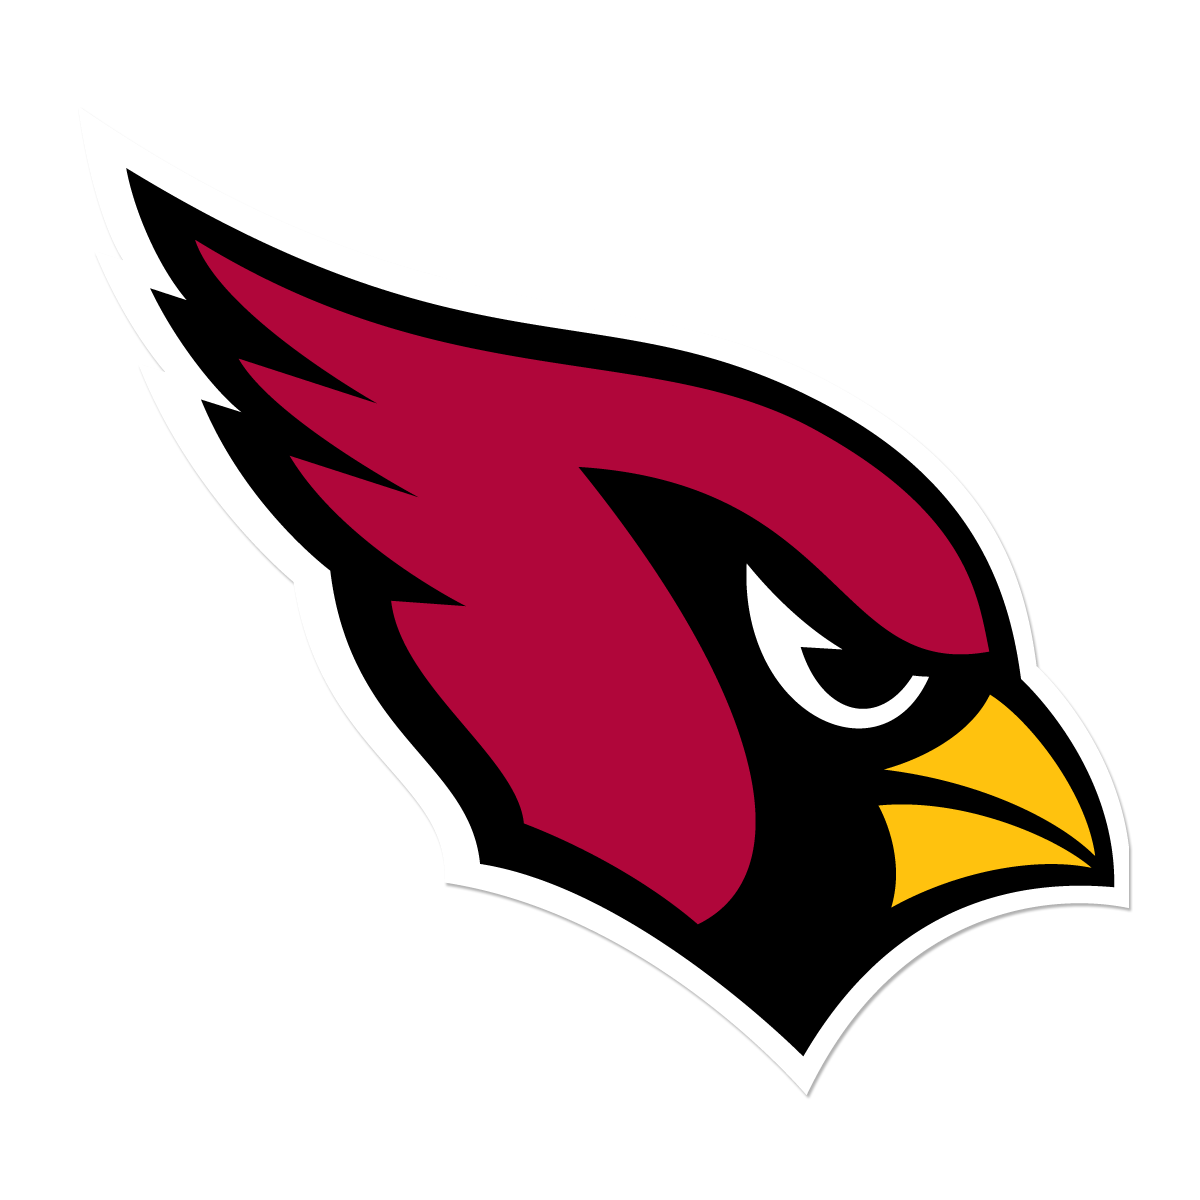 Arizona Cardinals logo with h